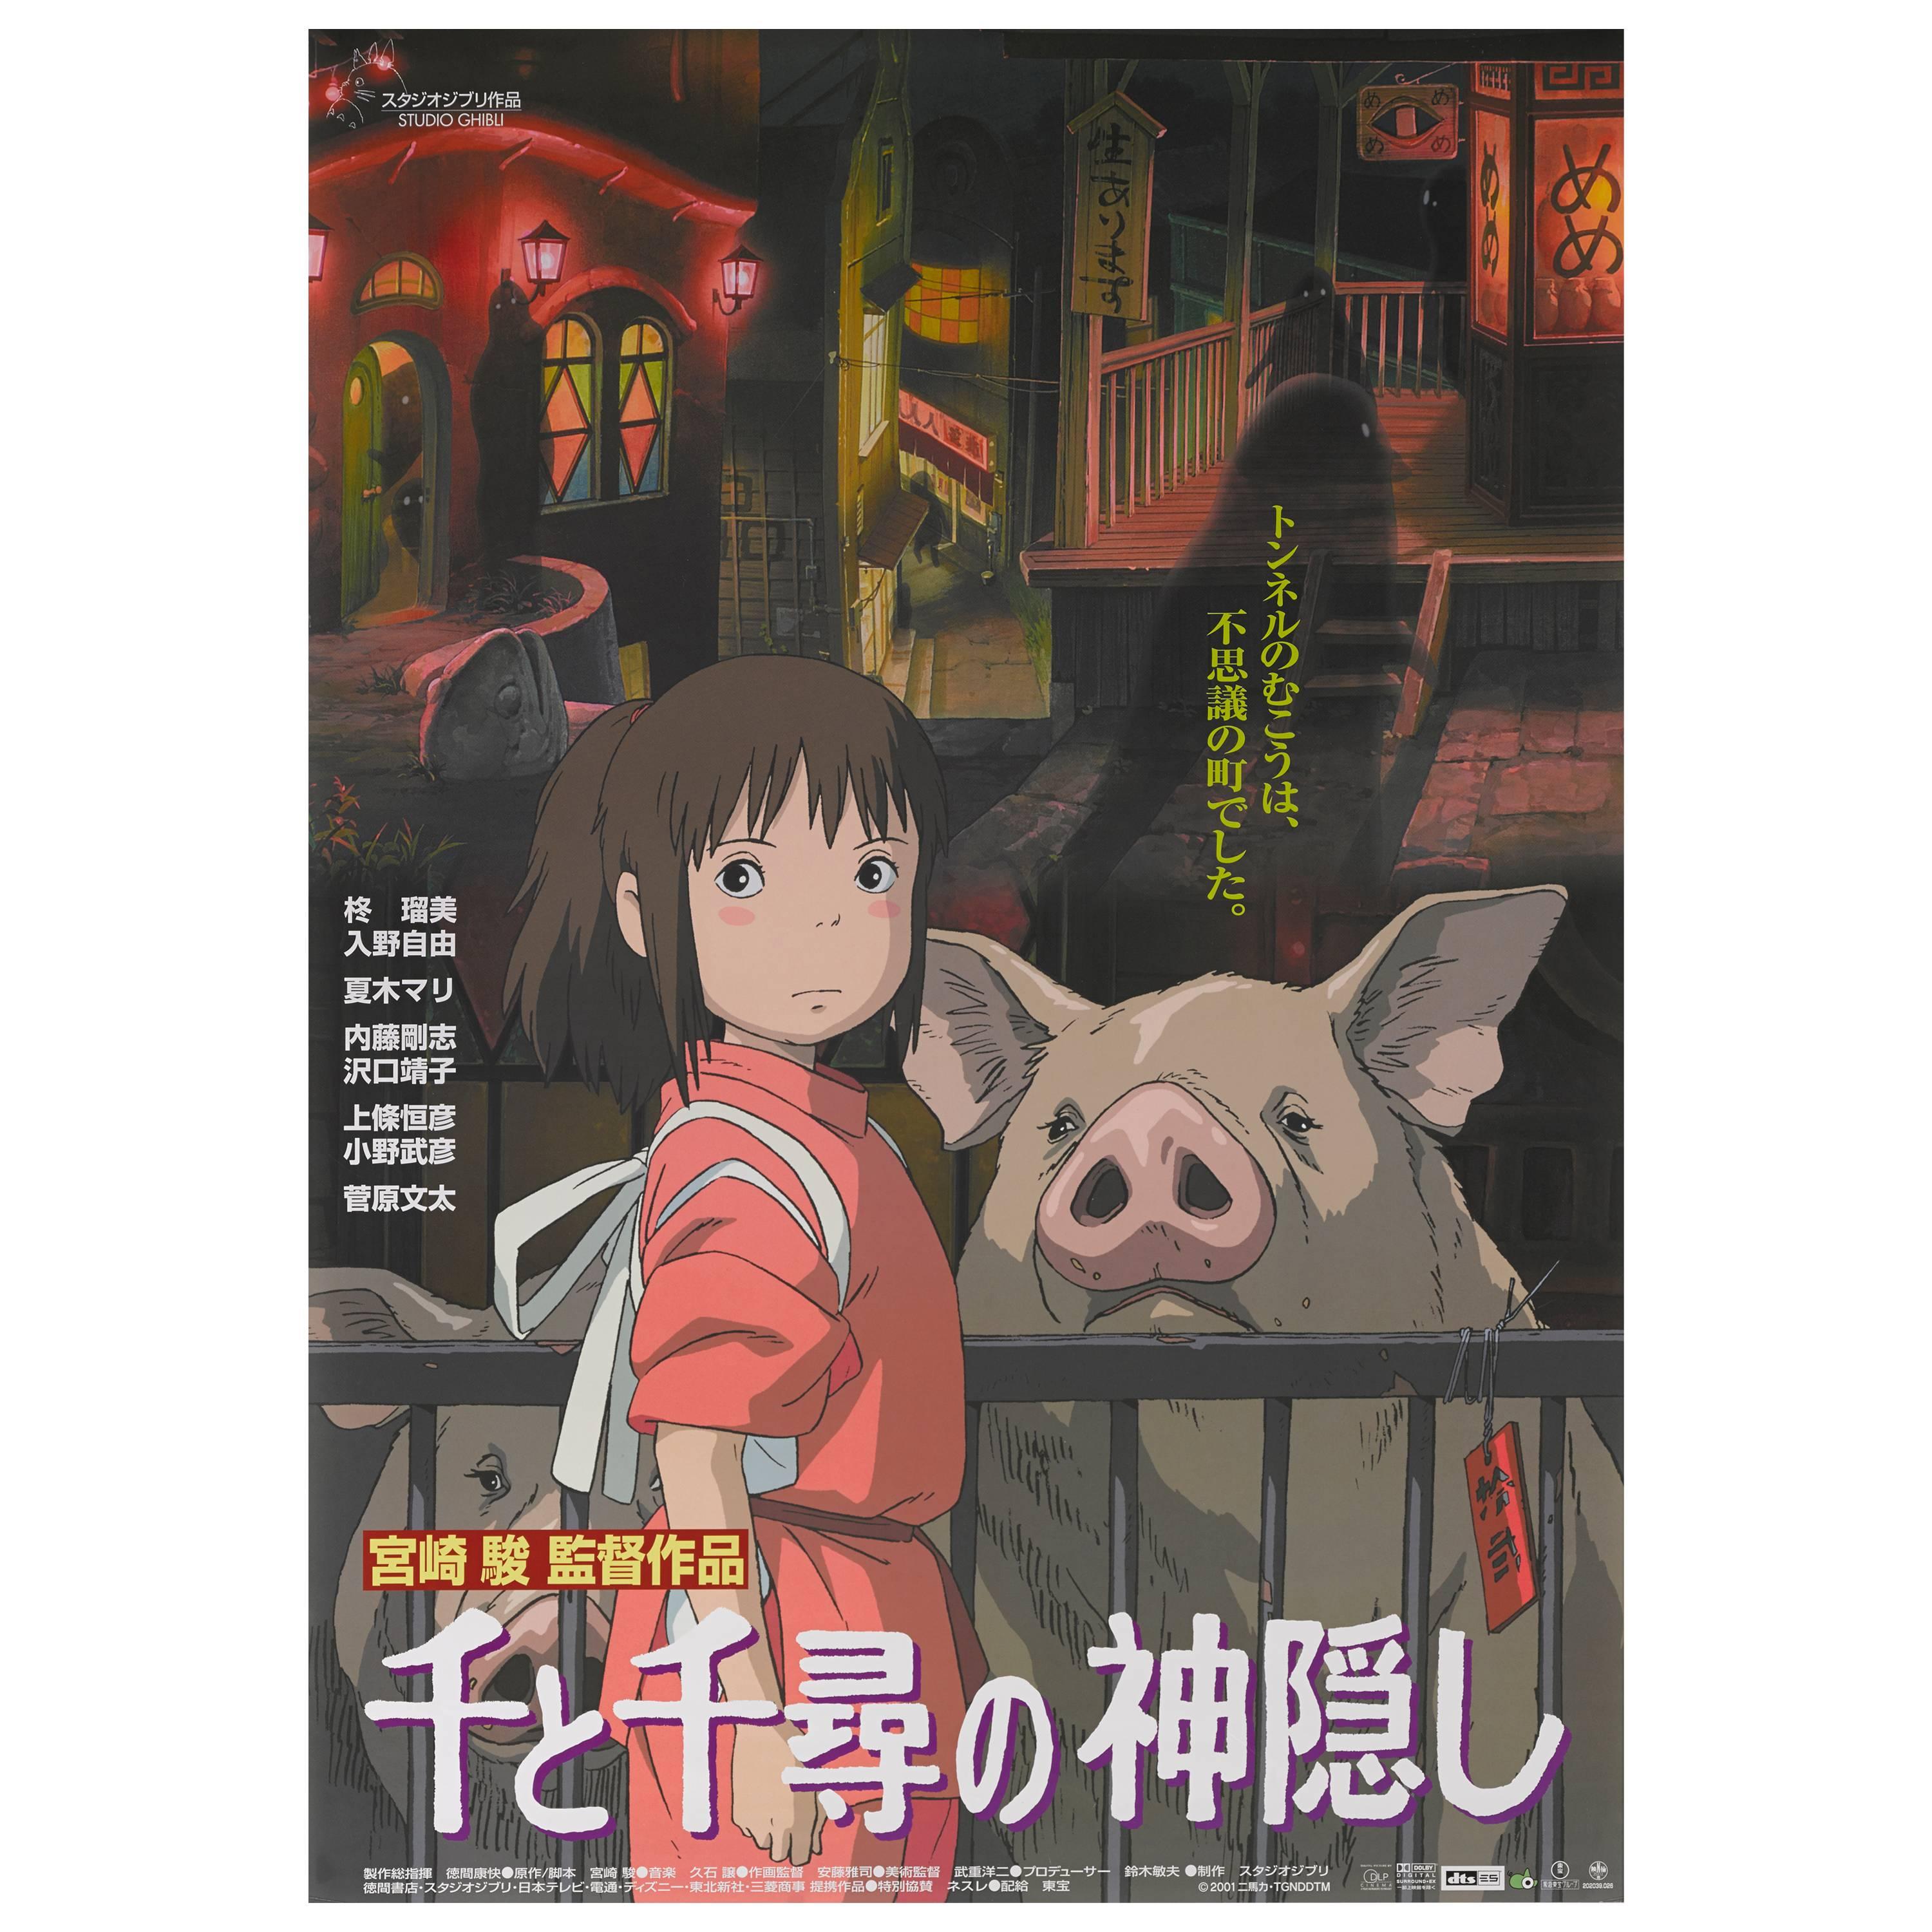 "Sen to Chihiro no Kamikakushi / Spirited Away" Original Japanese Movie Poster